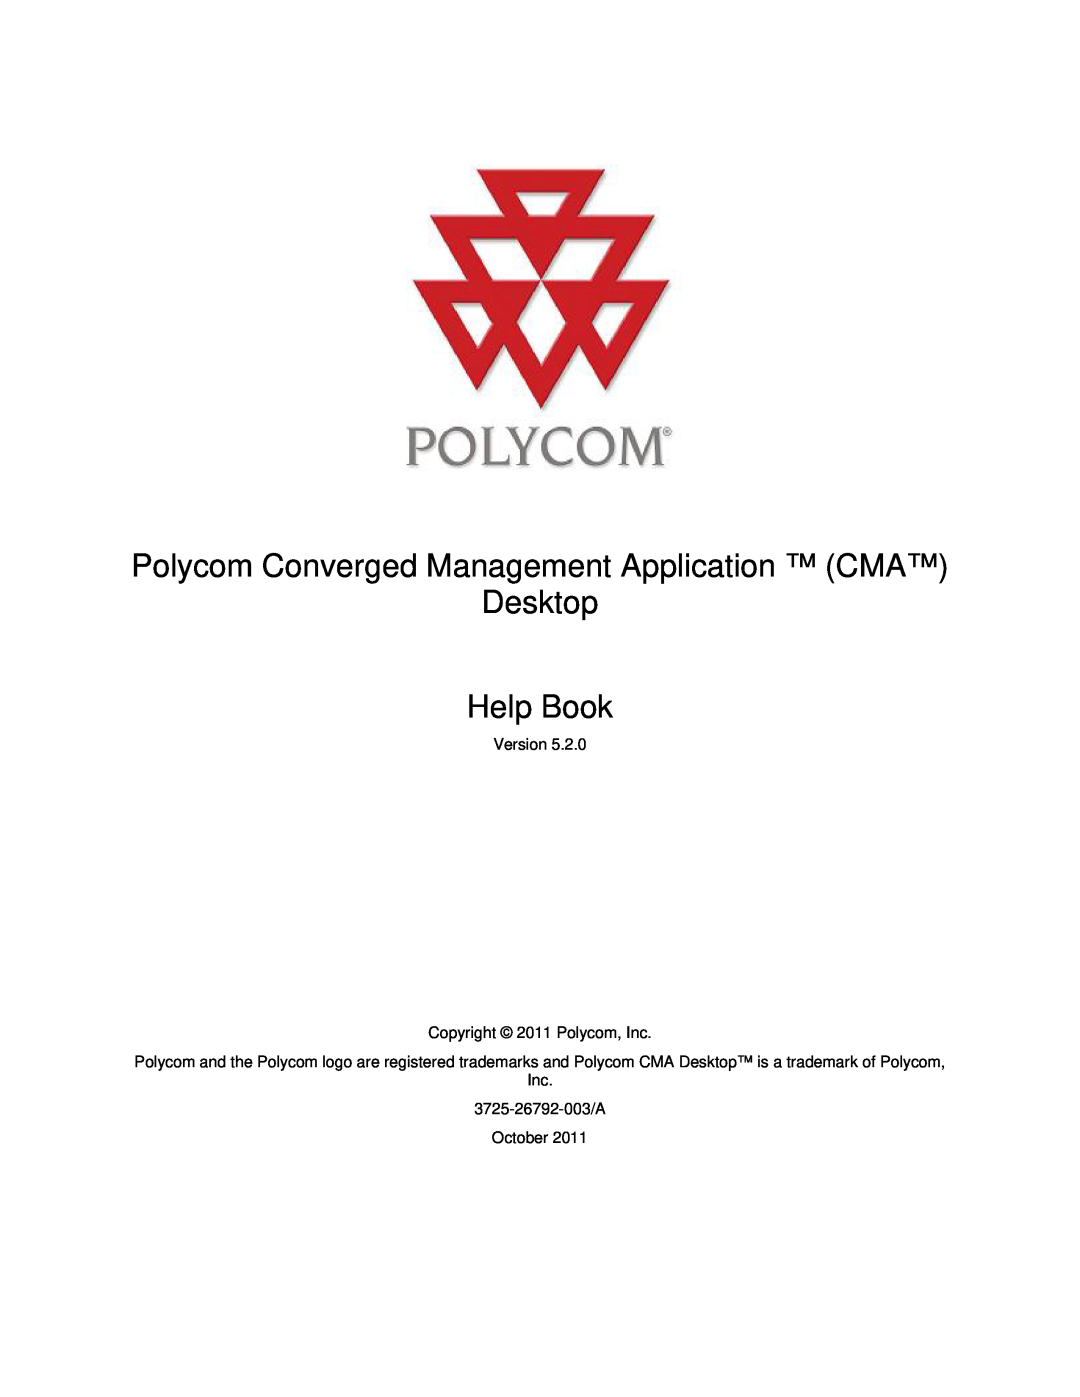 Polycom 5.2.0 manual Polycom Converged Management Application CMA Desktop Help Book, Version Copyright 2011 Polycom, Inc 